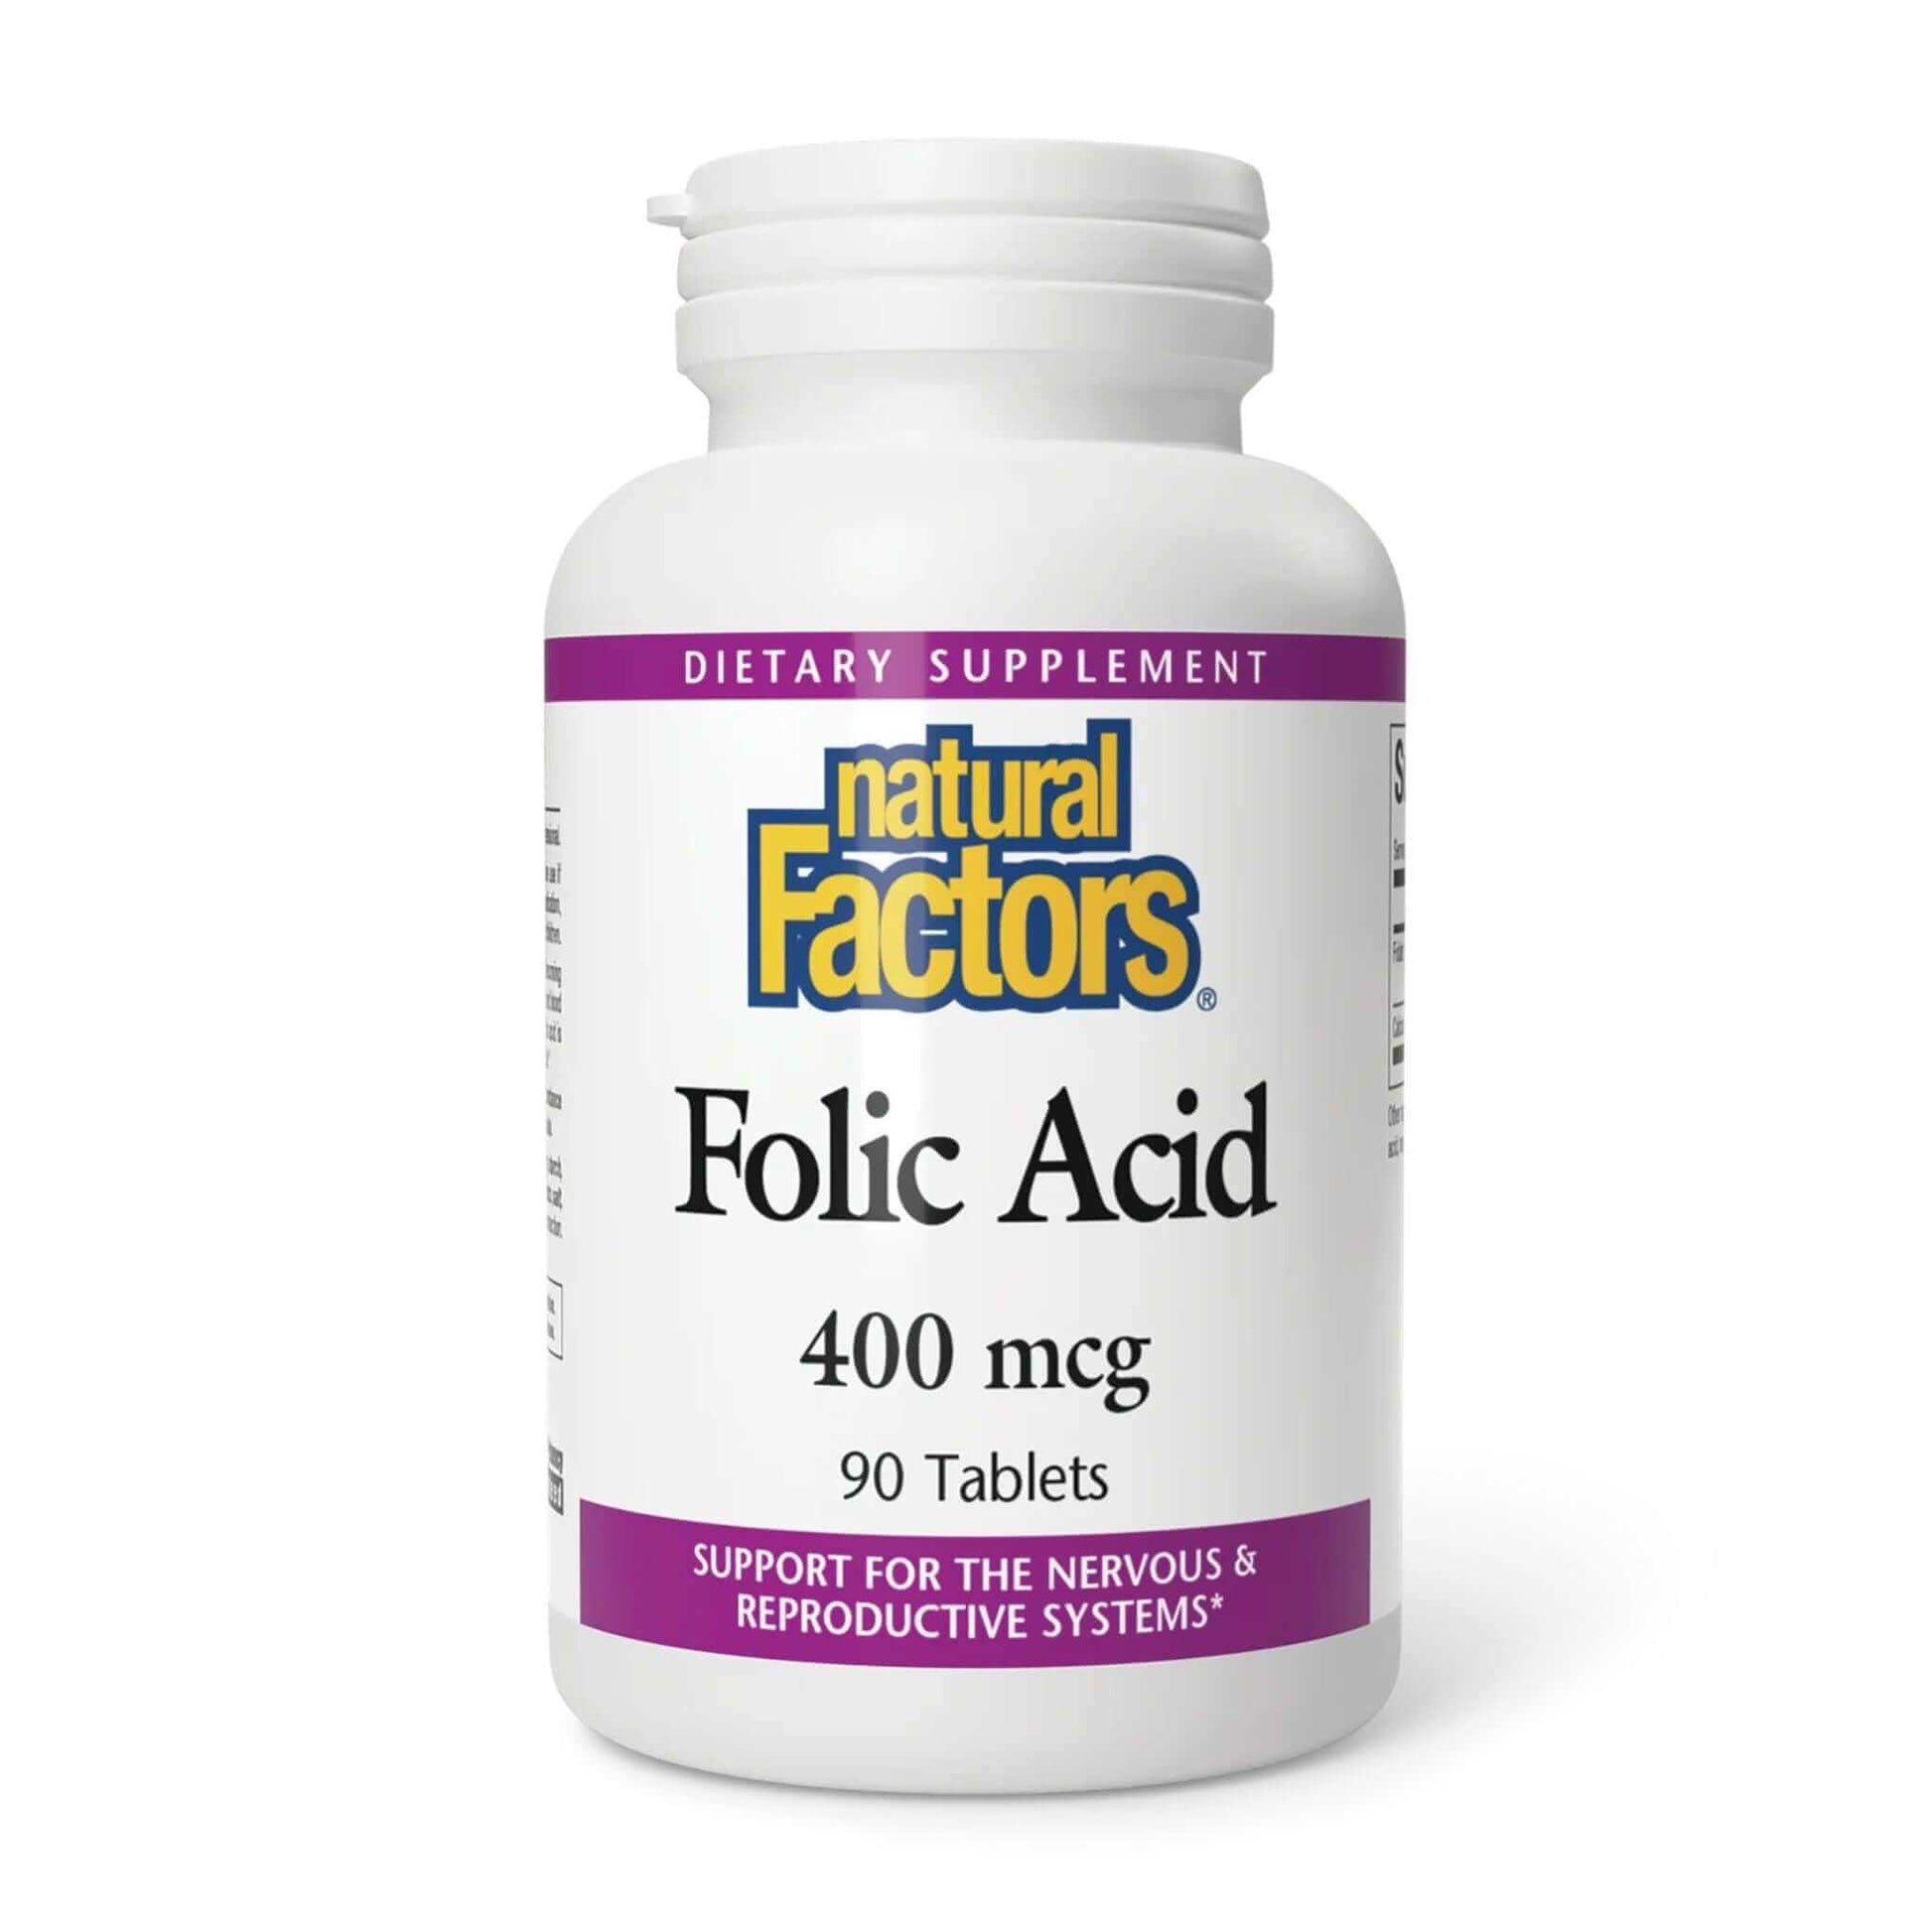 natural factors folic acid 400 mcg